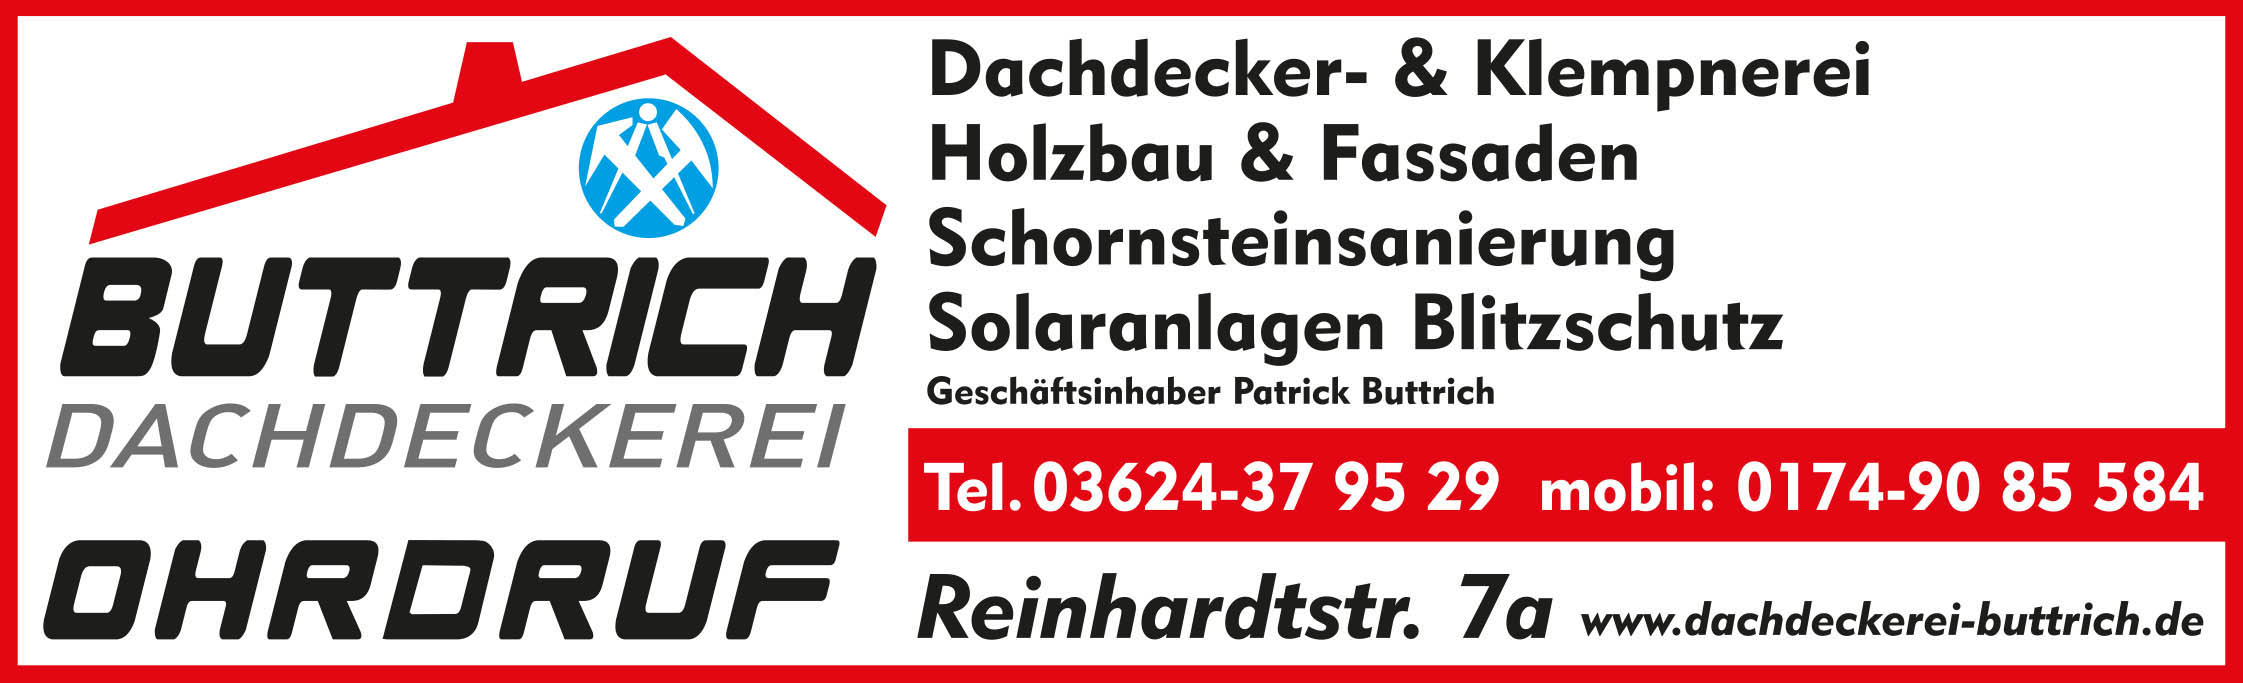 Dachdeckerei Buttrich GmbH & Co. KG, Ohrdruf